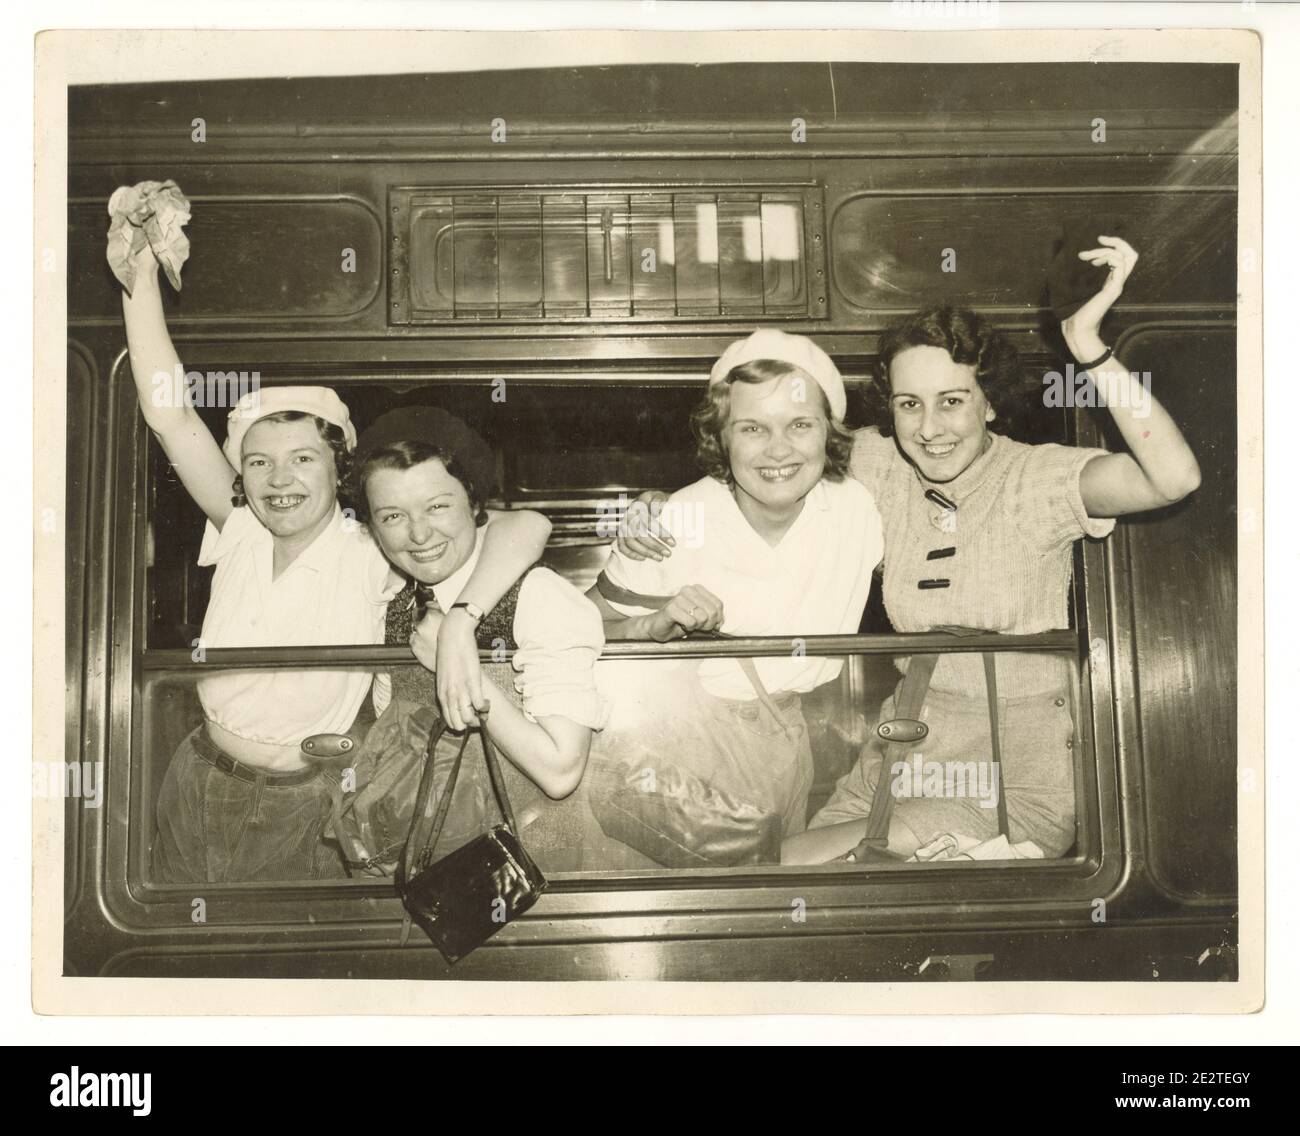 Pressefoto aus der Zeit des 2. Weltkriegs von glücklichen jungen Wanderinnen am Bahnhof, die aus einem Dampfeisenbahnfenster winken, London, Großbritannien, 1940er Jahre Stockfoto